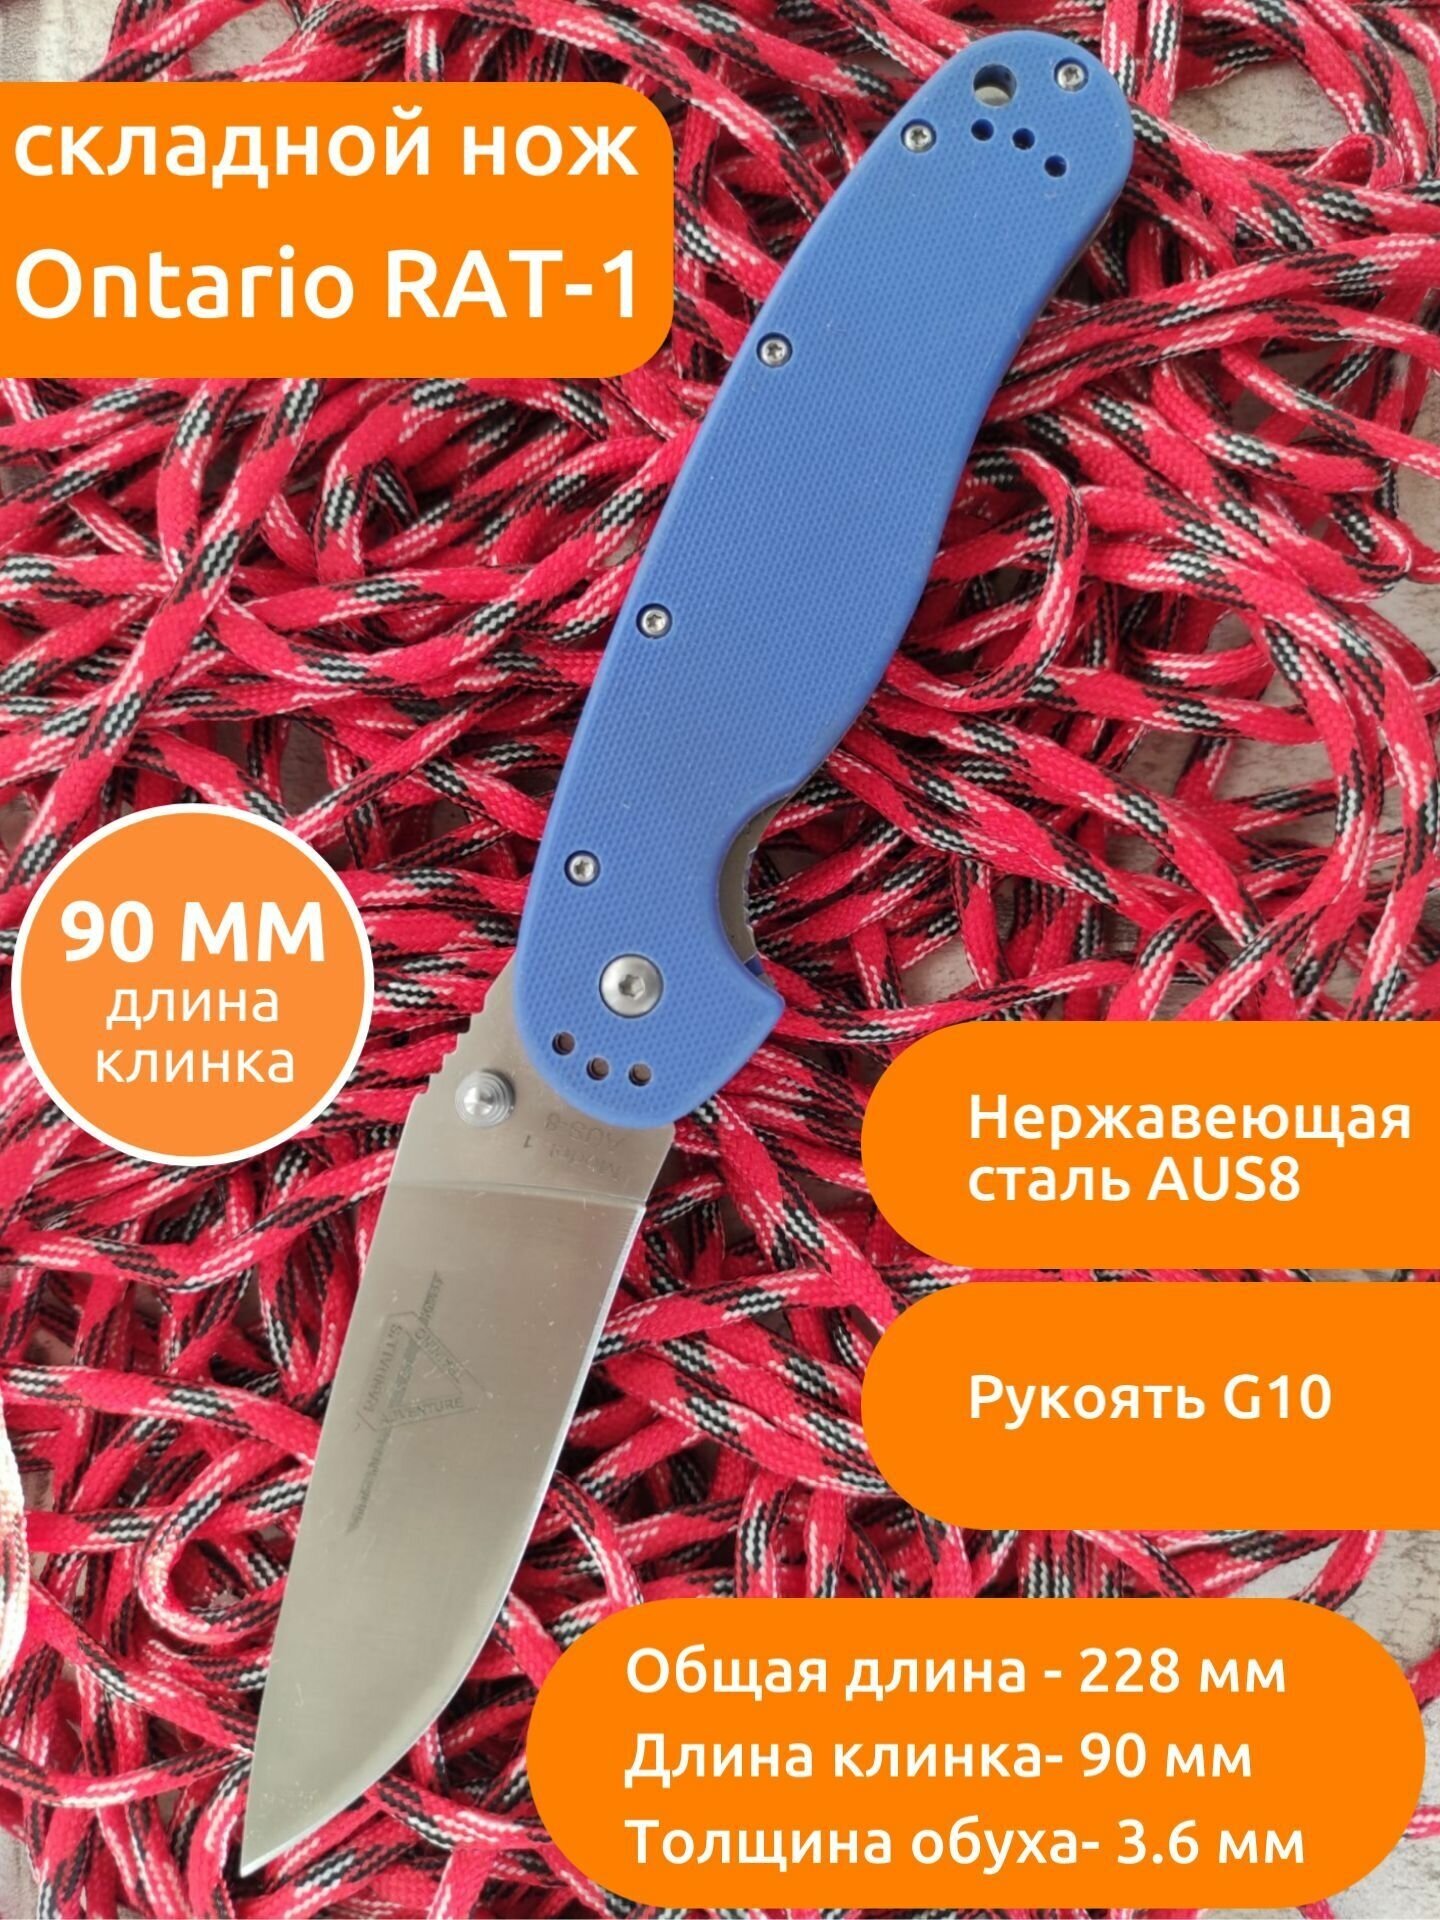 Нож Складной Крыса Ontario Rat-1 голубой G10